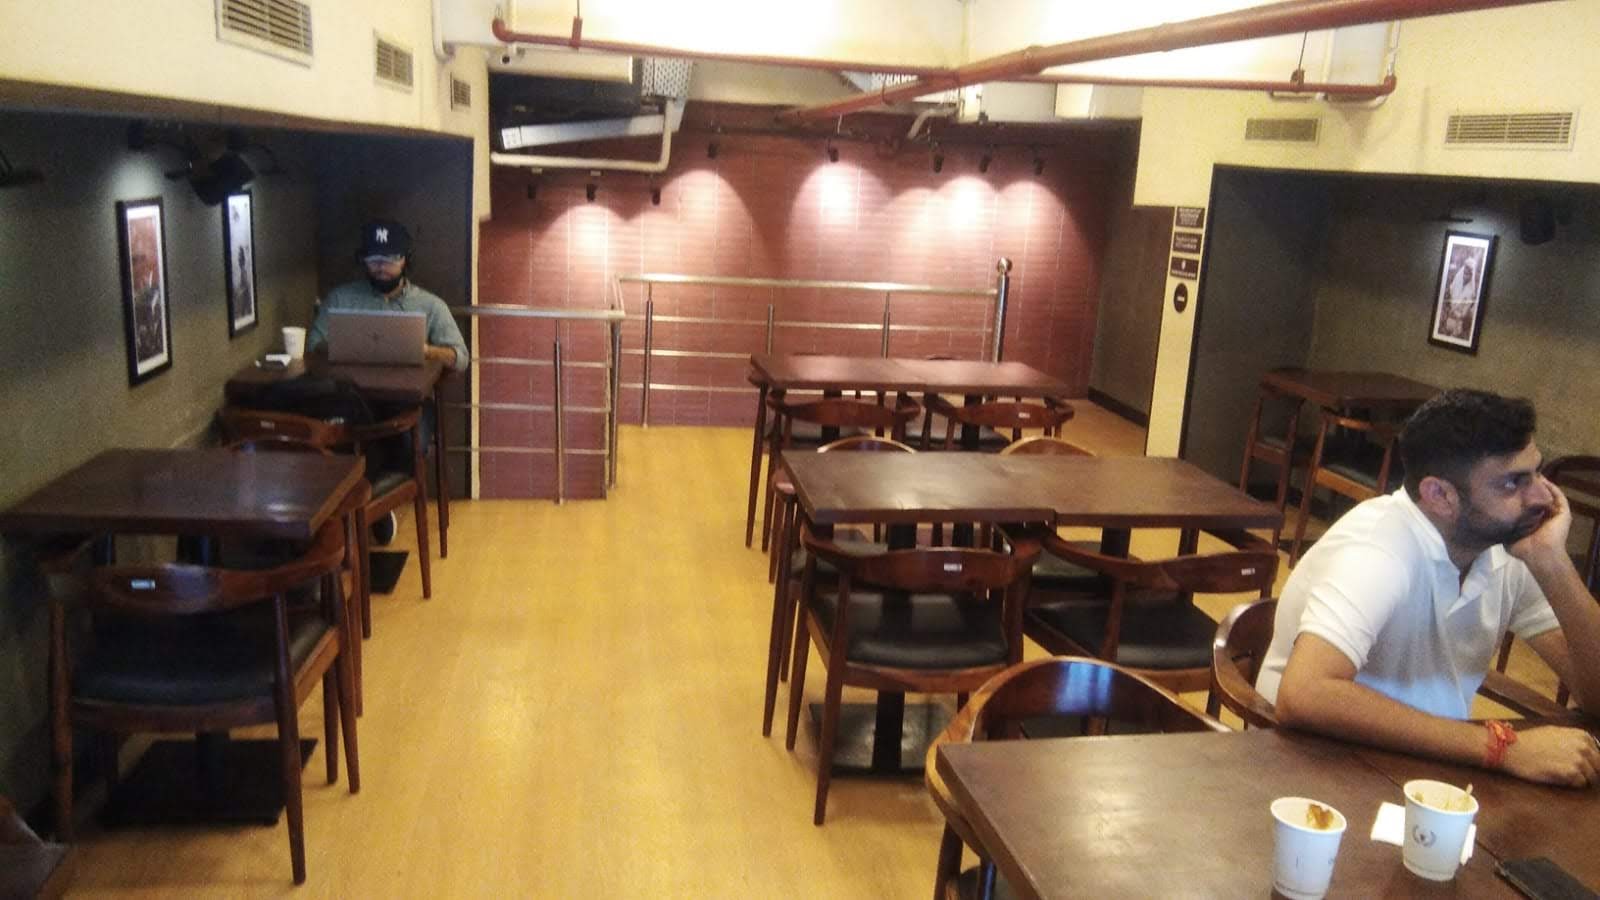 Chai Point - Sector 47, Gurgaon Cafe - Sector 47, Gurgaon